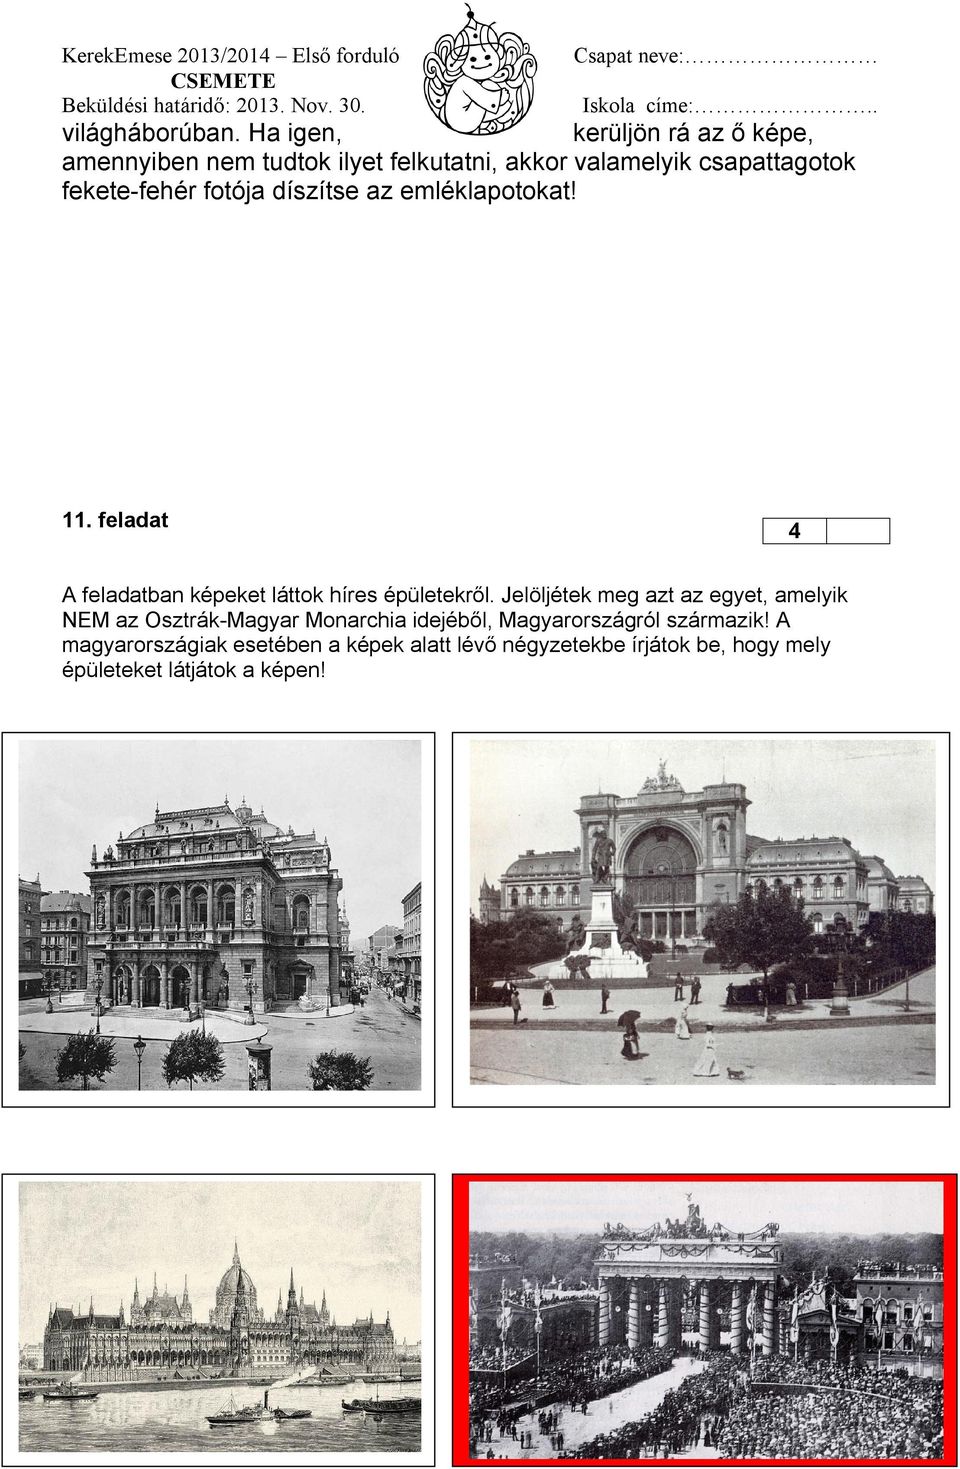 fekete-fehér fotója díszítse az emléklapotokat! 11. feladat 4 A feladatban képeket láttok híres épületekről.